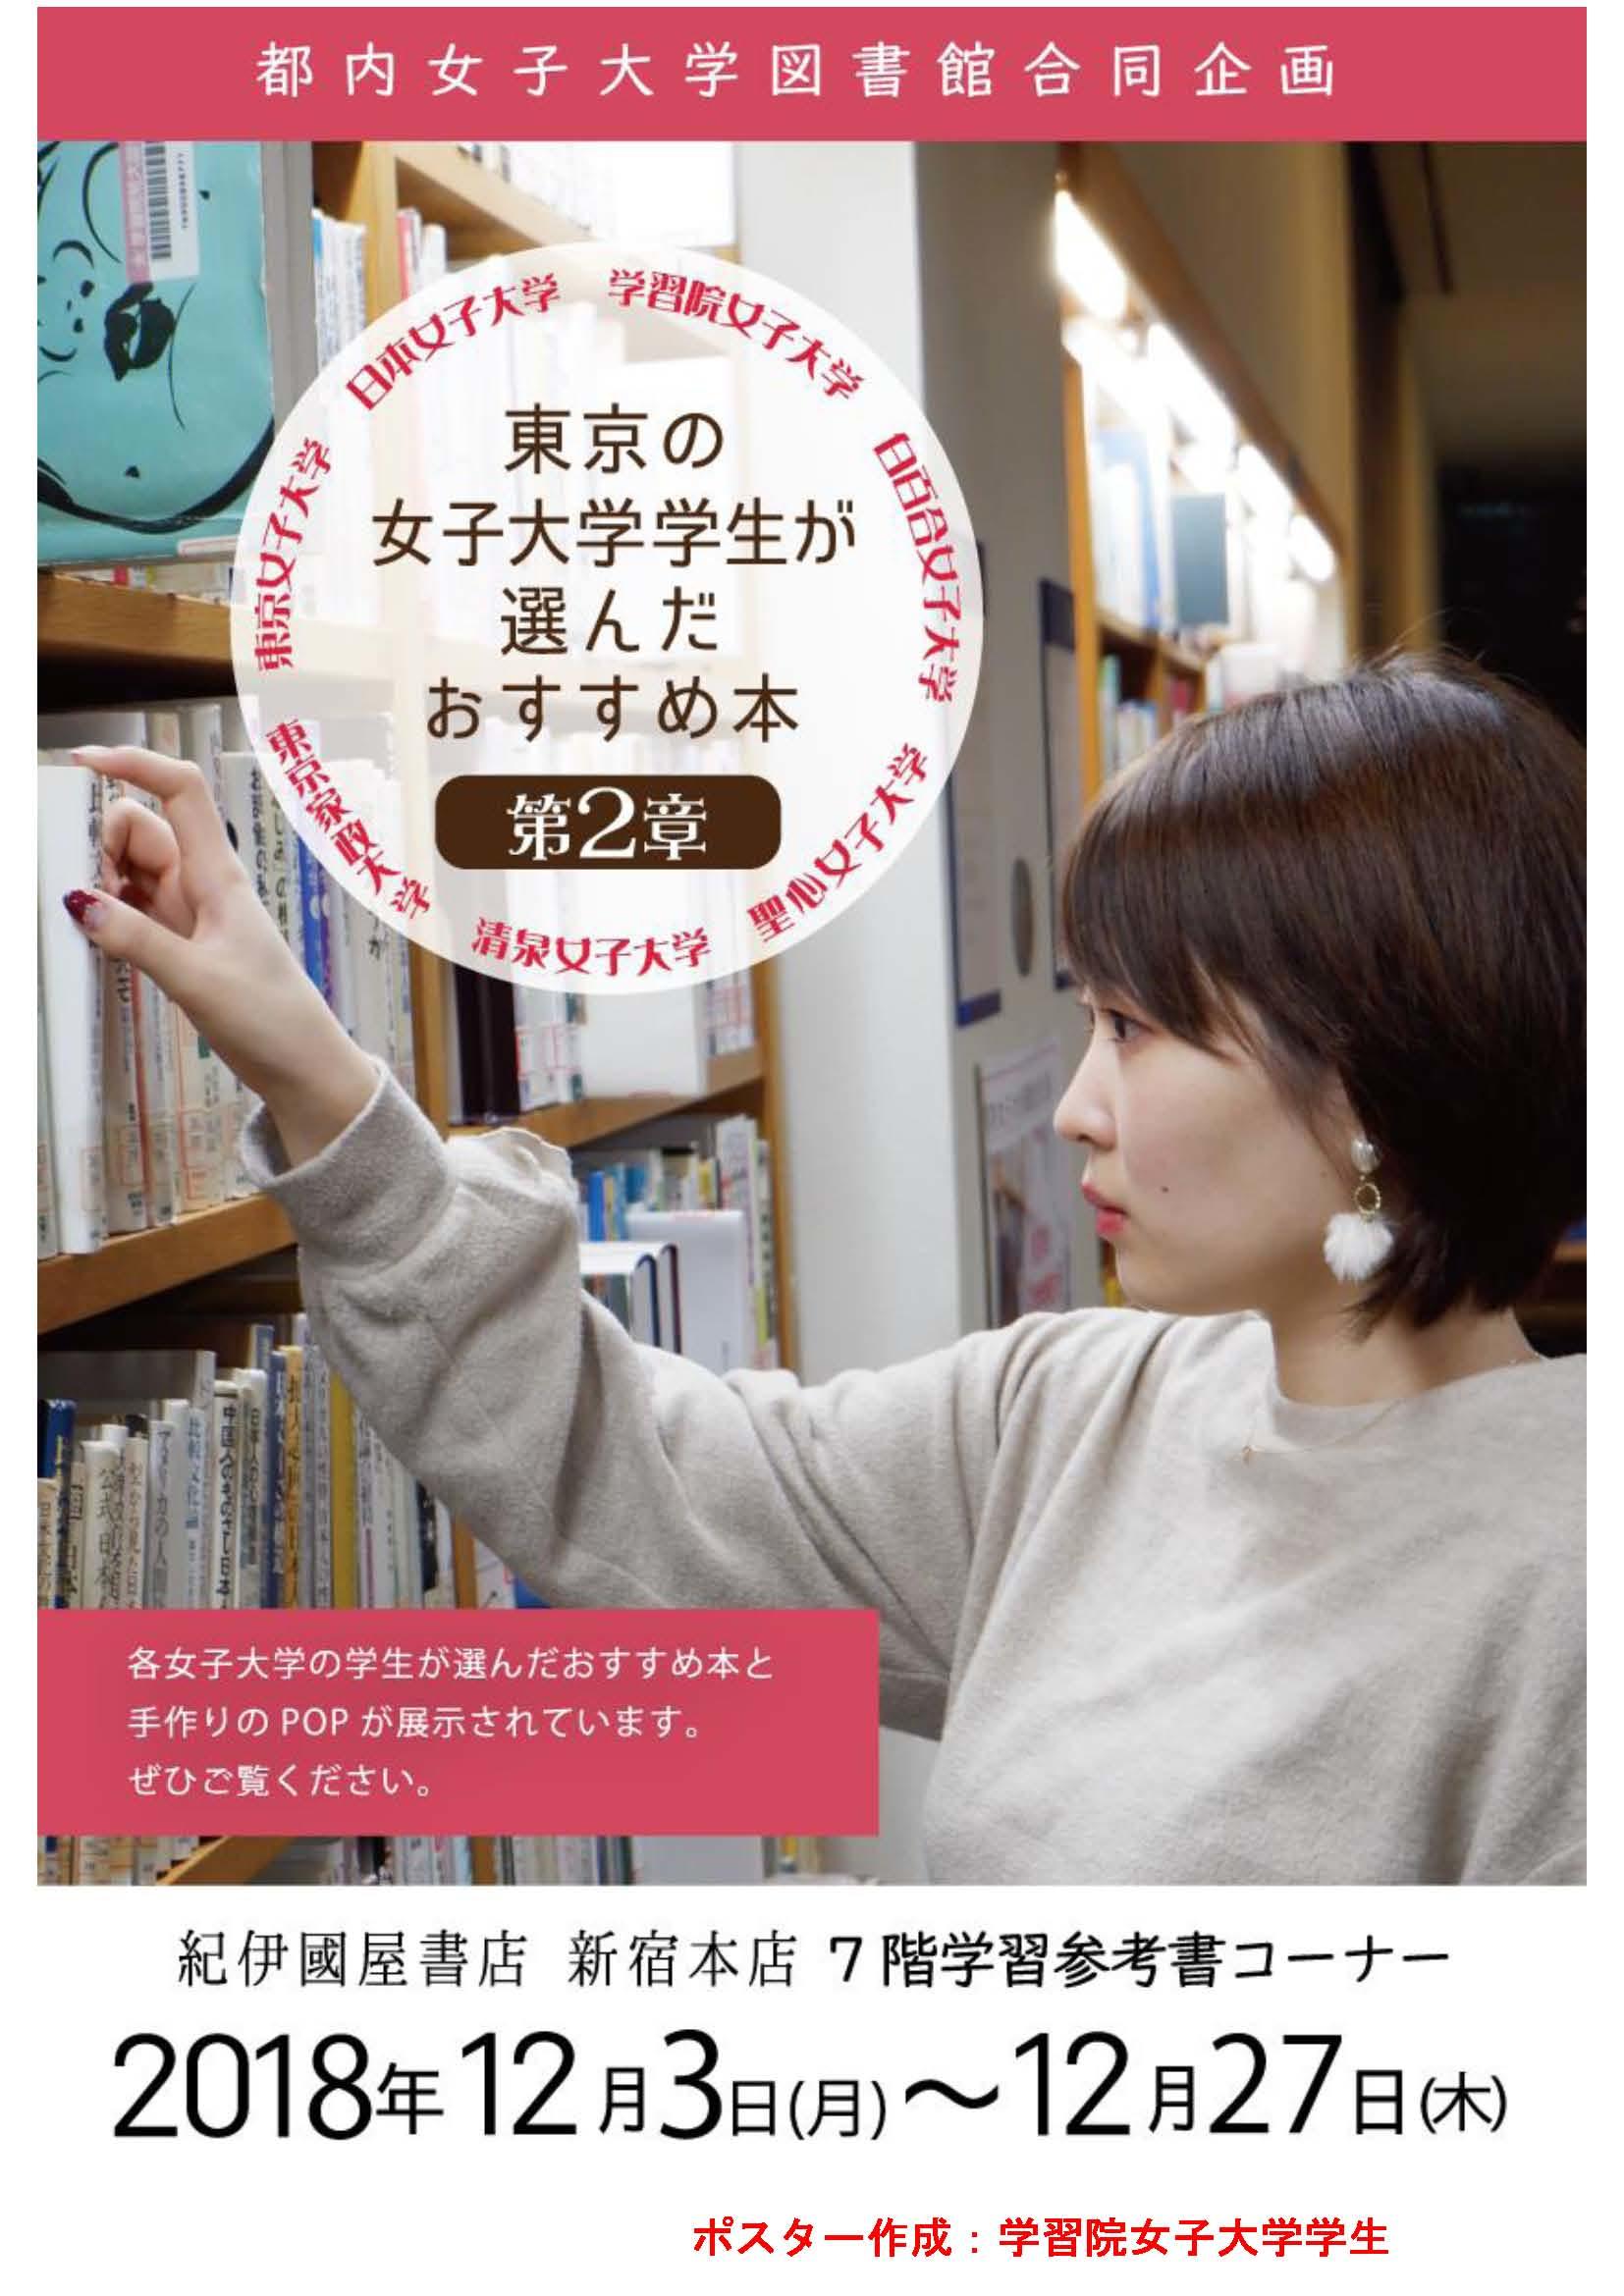 都内の女子大学図書館合同企画「東京の女子大学学生が選んだおすすめ本」フェア